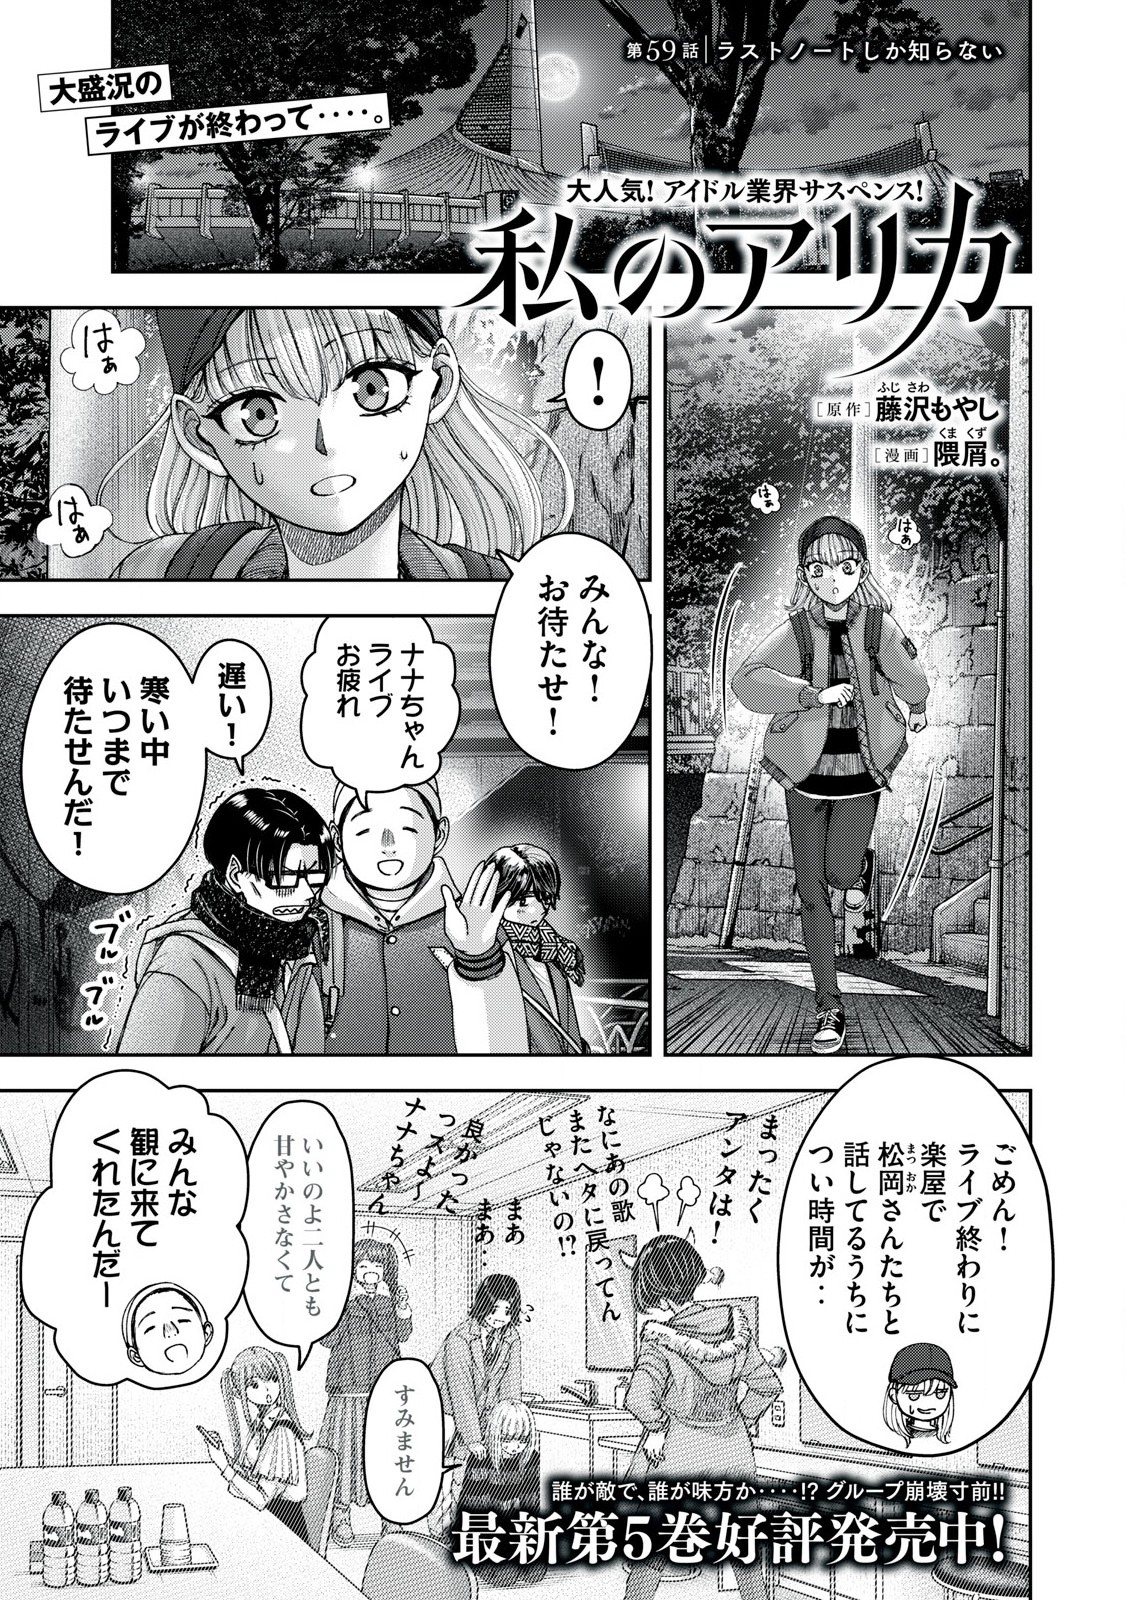 Watashi no Arika - Chapter 59 - Page 1